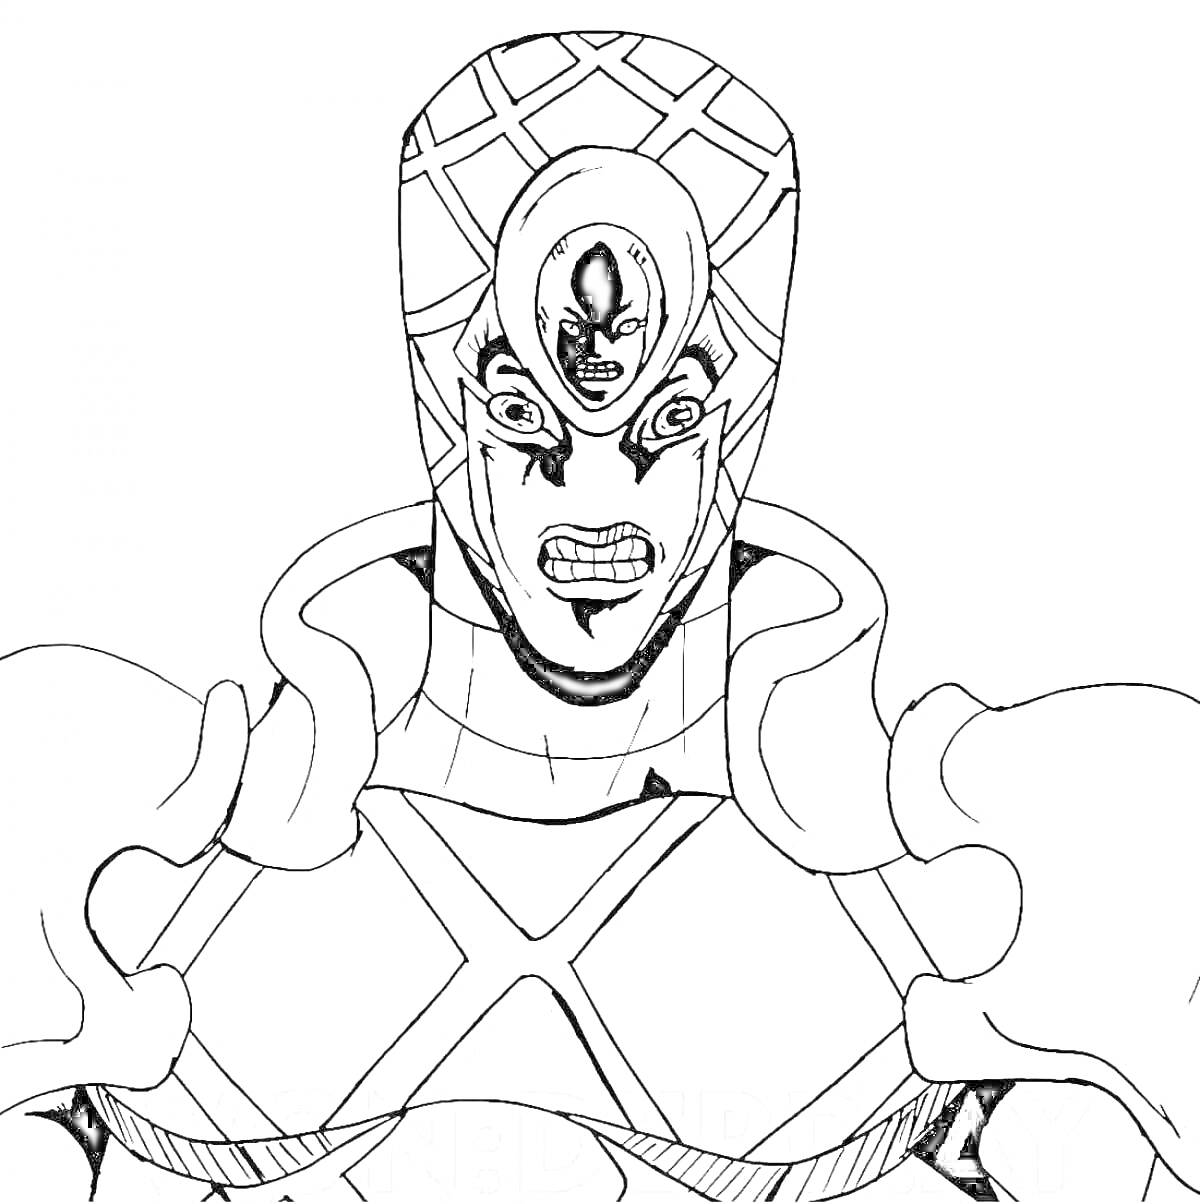 Раскраска Персонаж из JoJo's Bizarre Adventure в доспехах с выразительным лицом и шлемом с диагональной сеткой